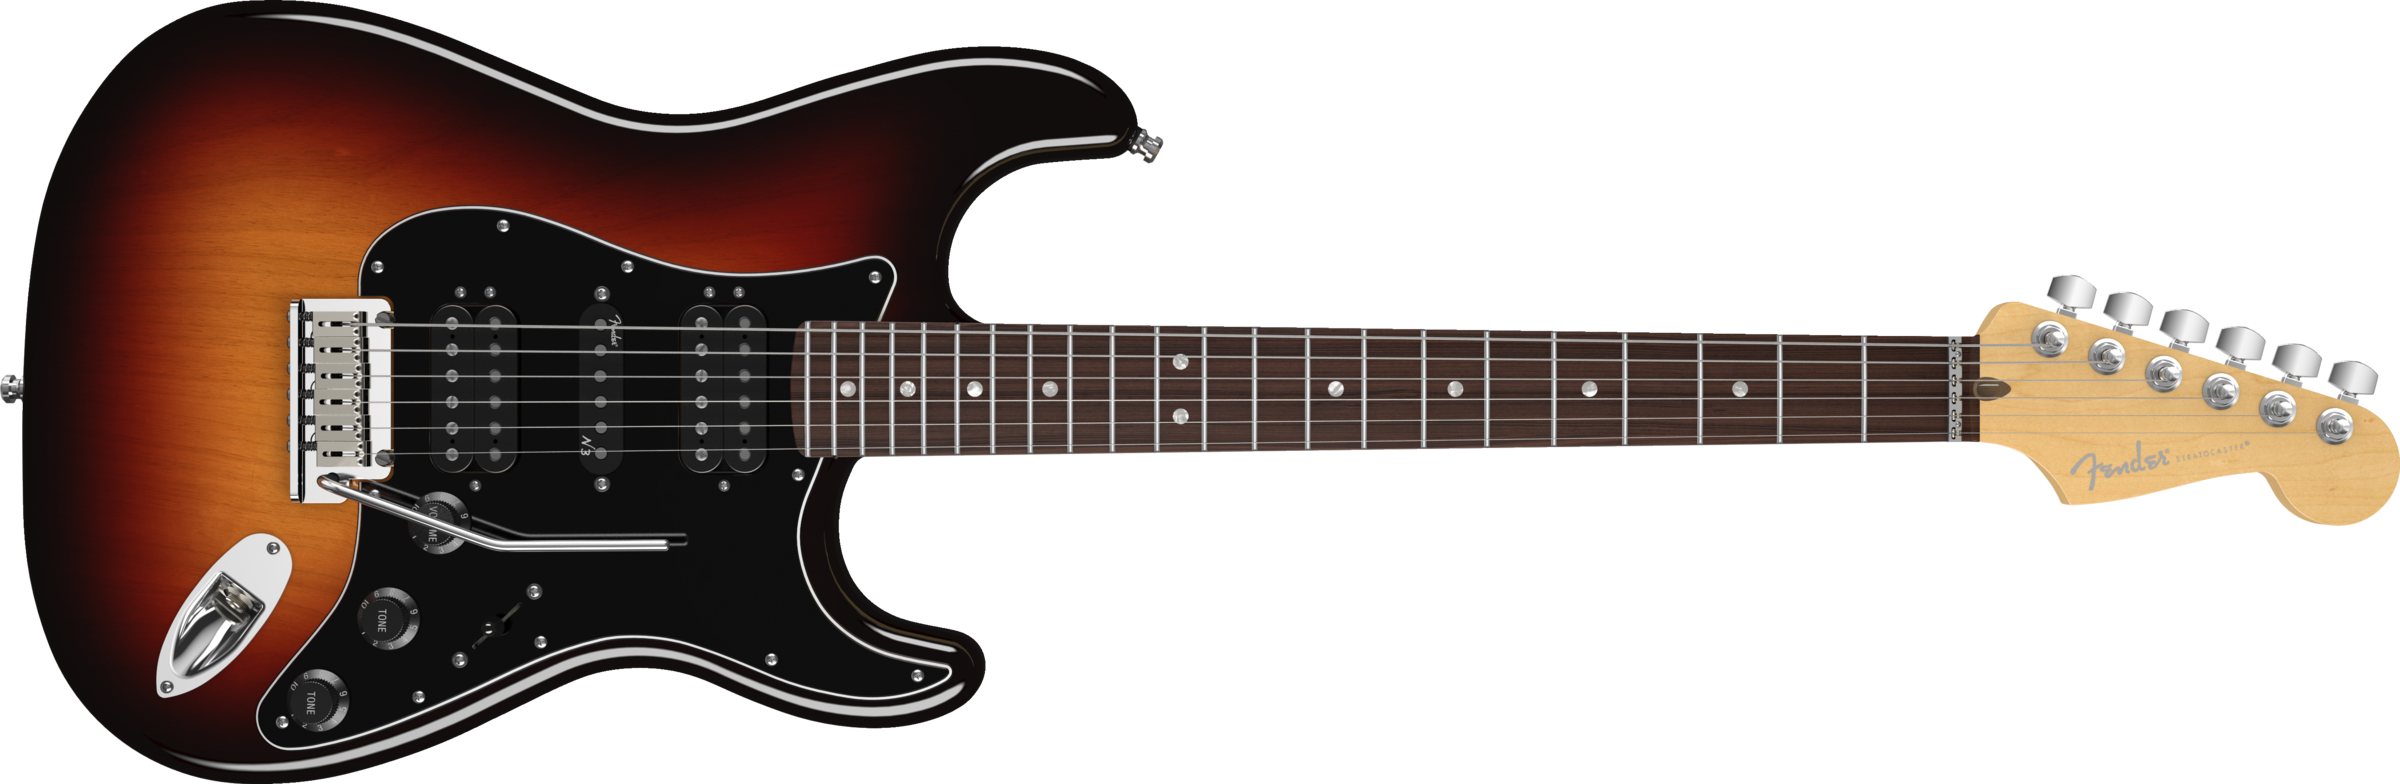 Guitar PNG - 8247